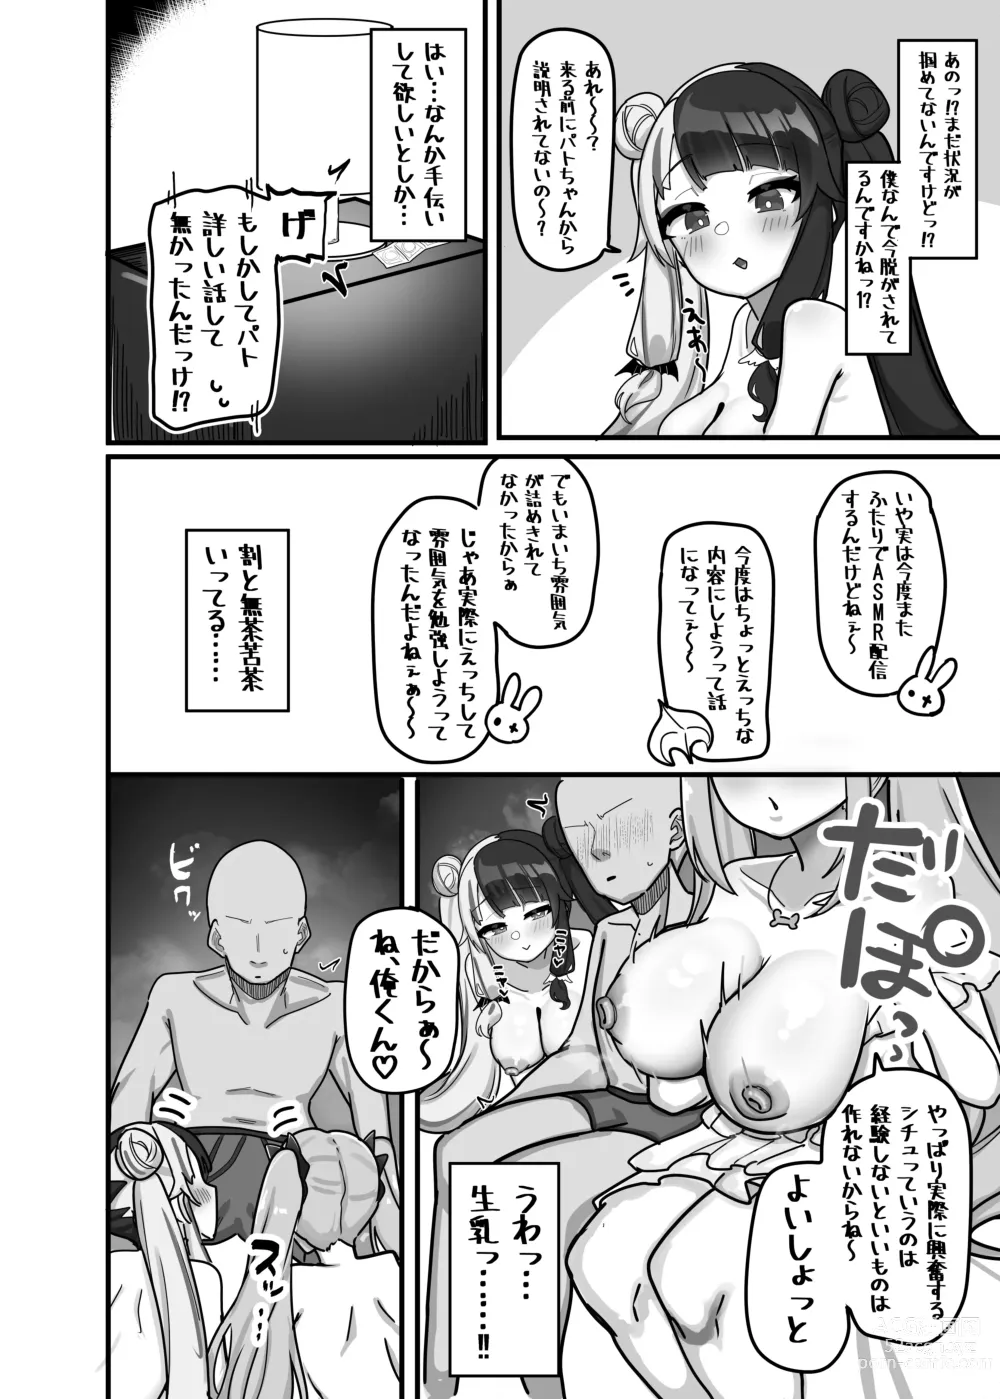 Page 6 of doujinshi Soushi Souai